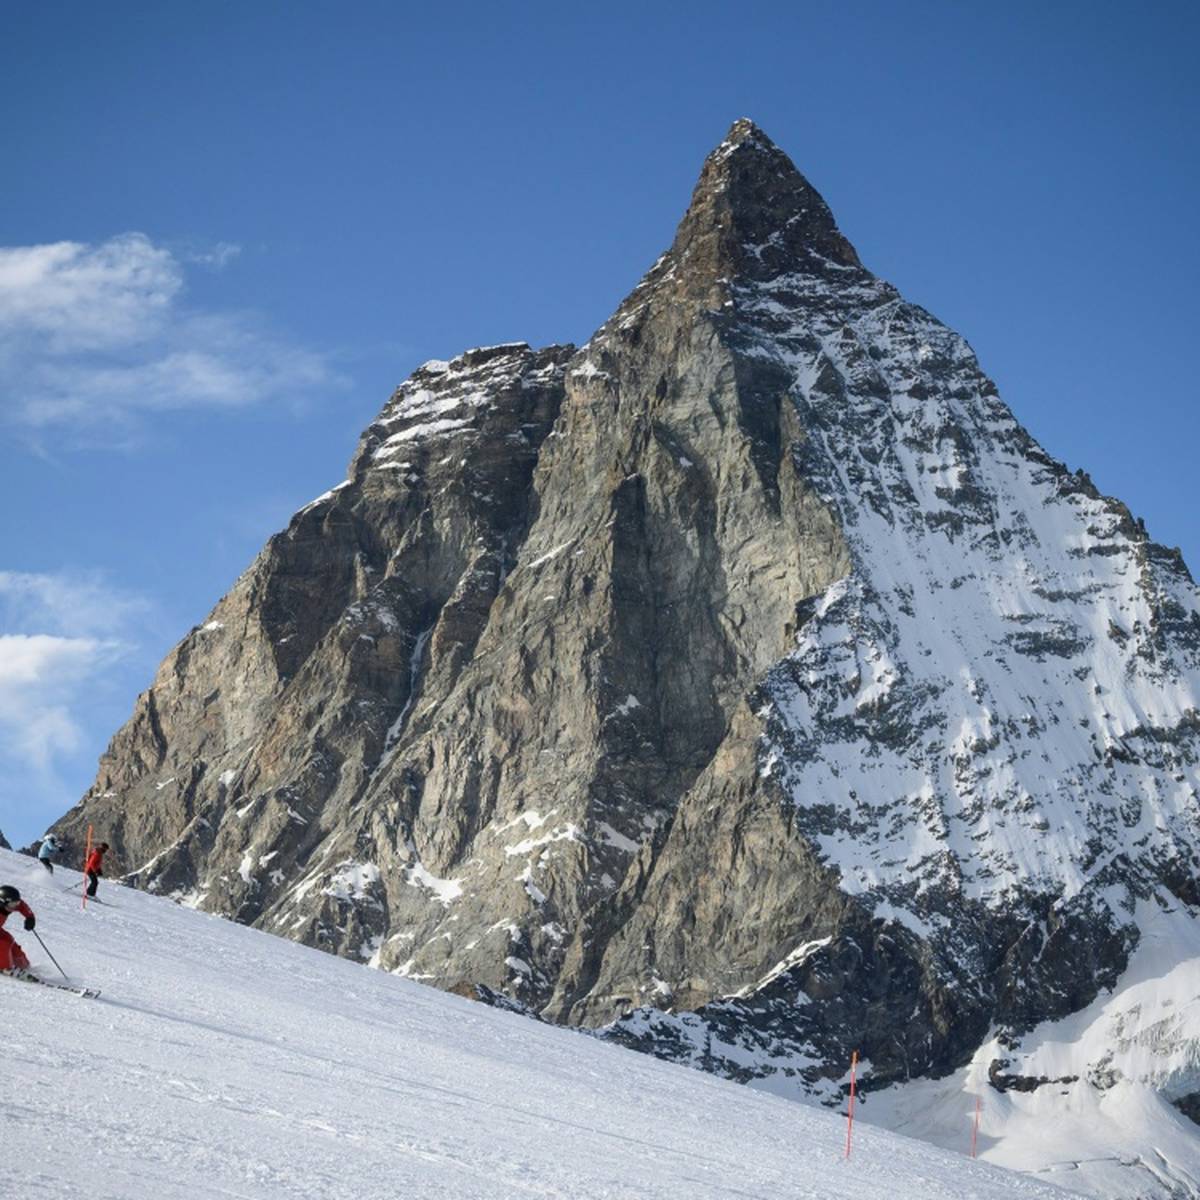 Das Matterhorn wird bereits im kommenden Herbst die spektakuläre Kulisse für insgesamt vier Abfahrts-Rennen im alpinen Weltcup bilden.